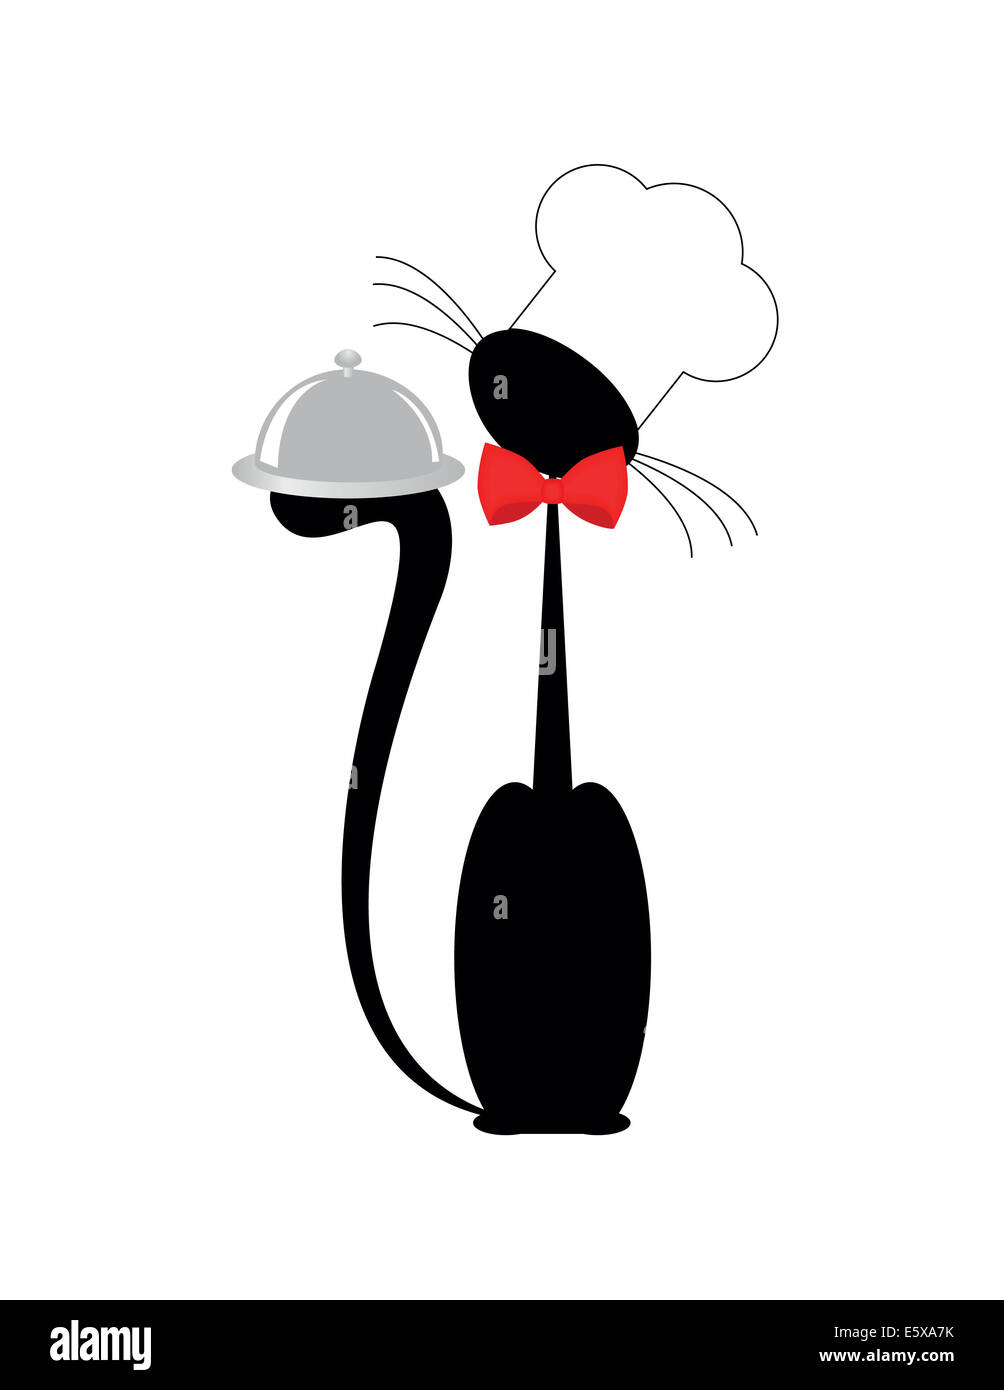 Une illustration d'un chat le cuisinier avec un bac Banque D'Images